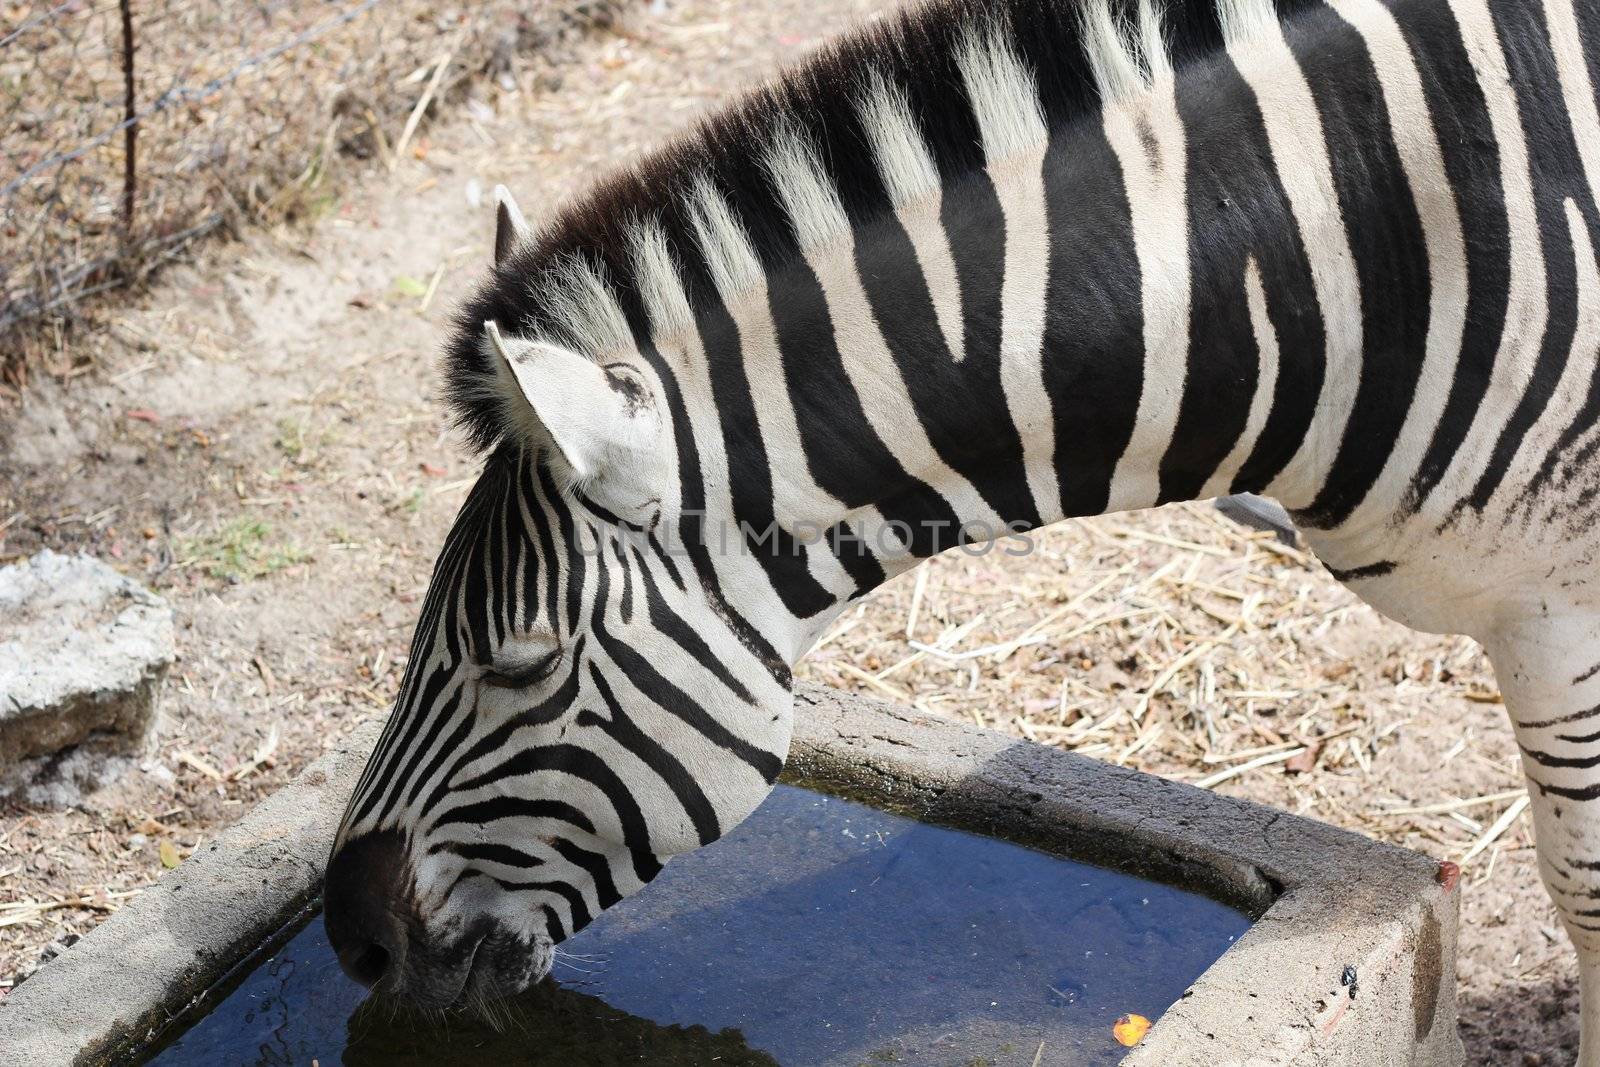 Standing Zebra drinking water by dwaschnig_photo